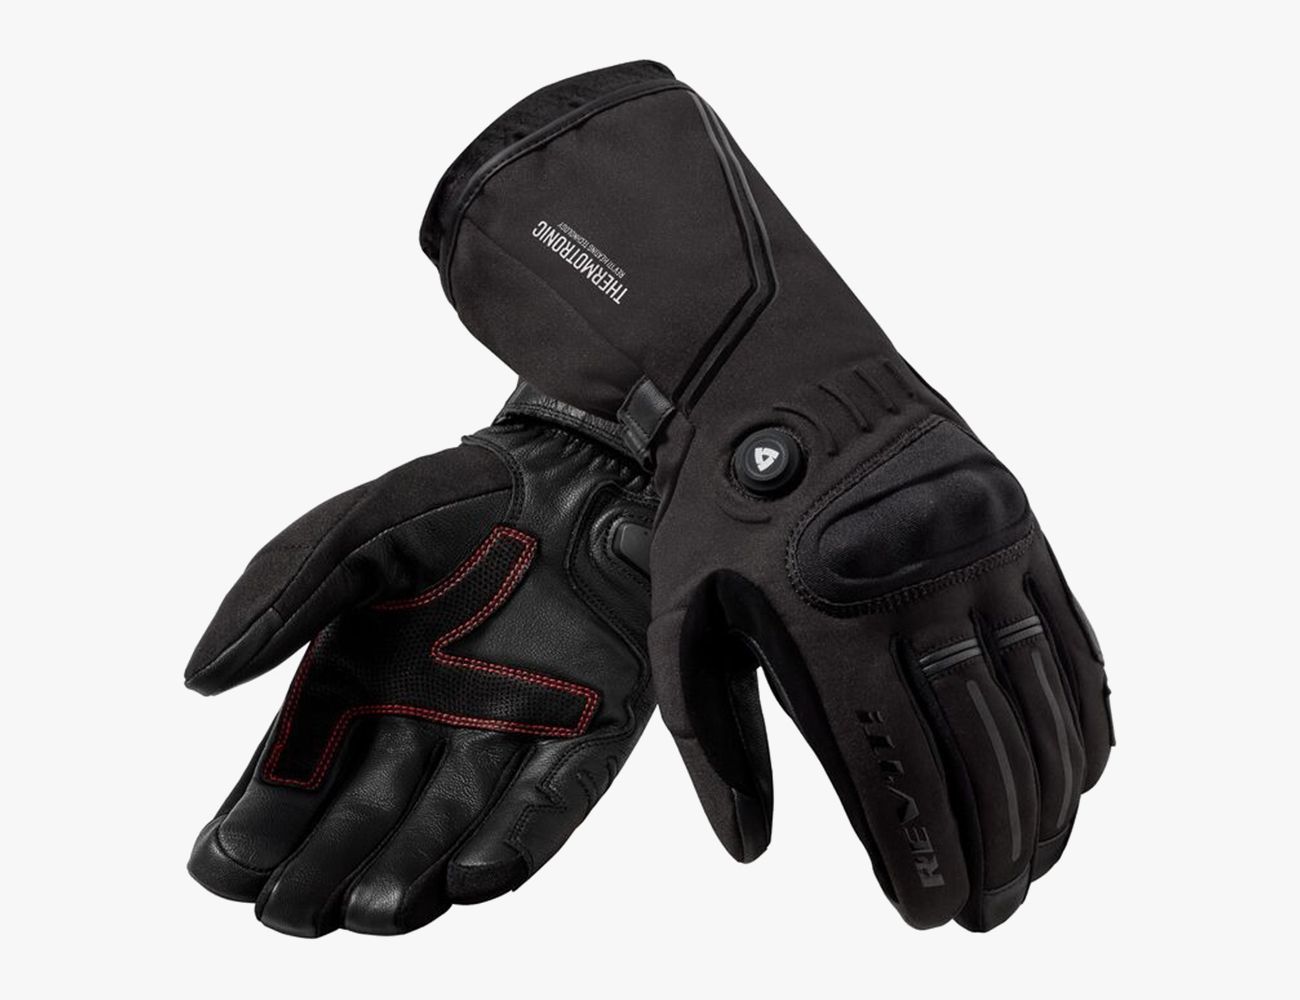 Black Leather Best Waterproof Thermal Thinsulate Warm Winter Motorcycle Motorbike Racing & Sport Gloves Easy Wrist Fastening 